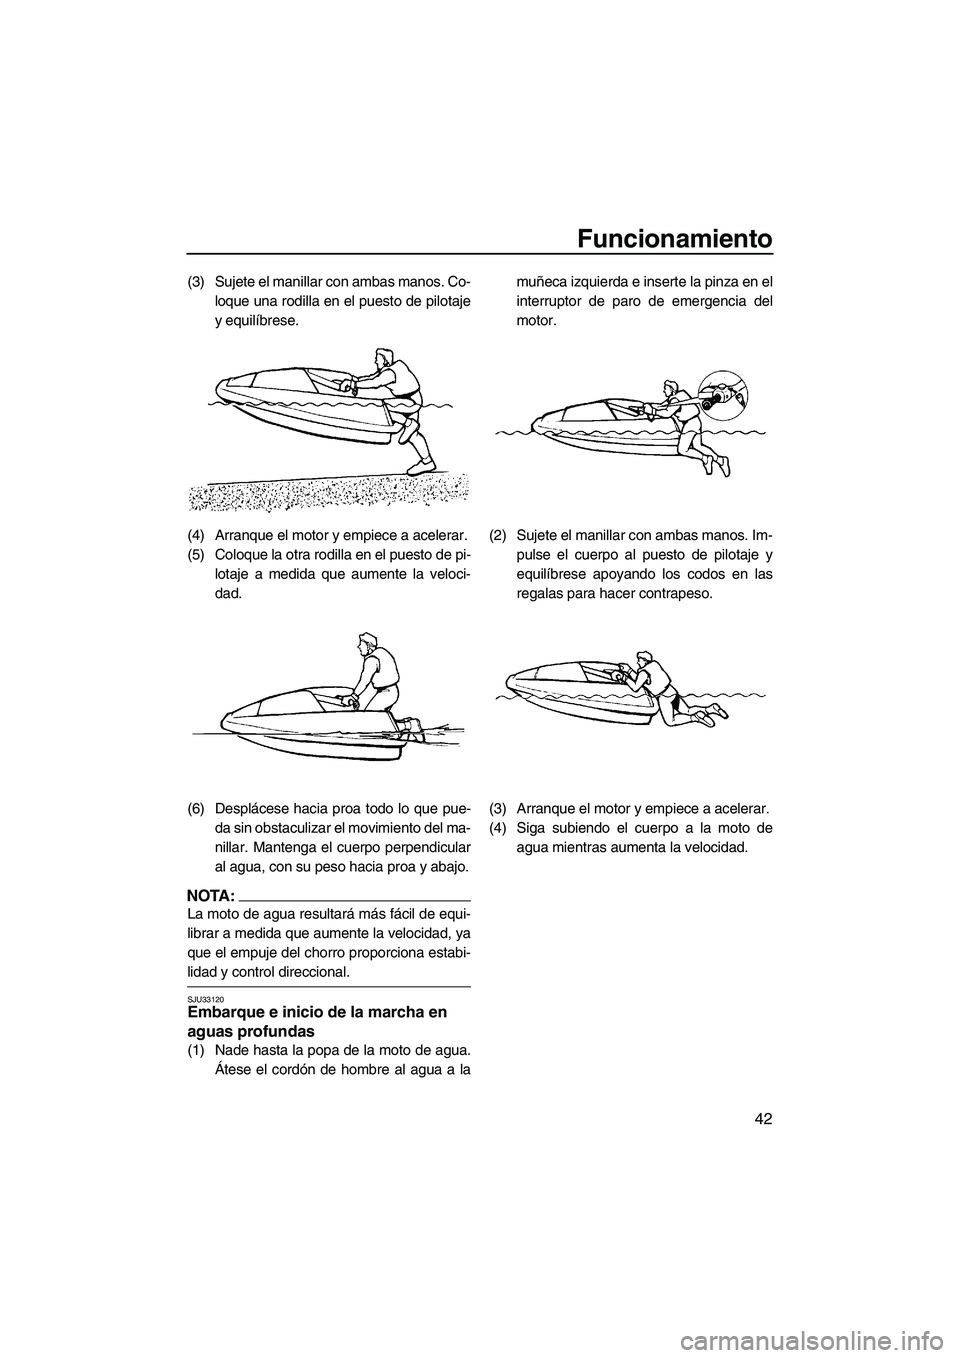 YAMAHA SUPERJET 2007  Manuale de Empleo (in Spanish) Funcionamiento
42
(3) Sujete el manillar con ambas manos. Co-
loque una rodilla en el puesto de pilotaje
y equilíbrese.
(4) Arranque el motor y empiece a acelerar.
(5) Coloque la otra rodilla en el p